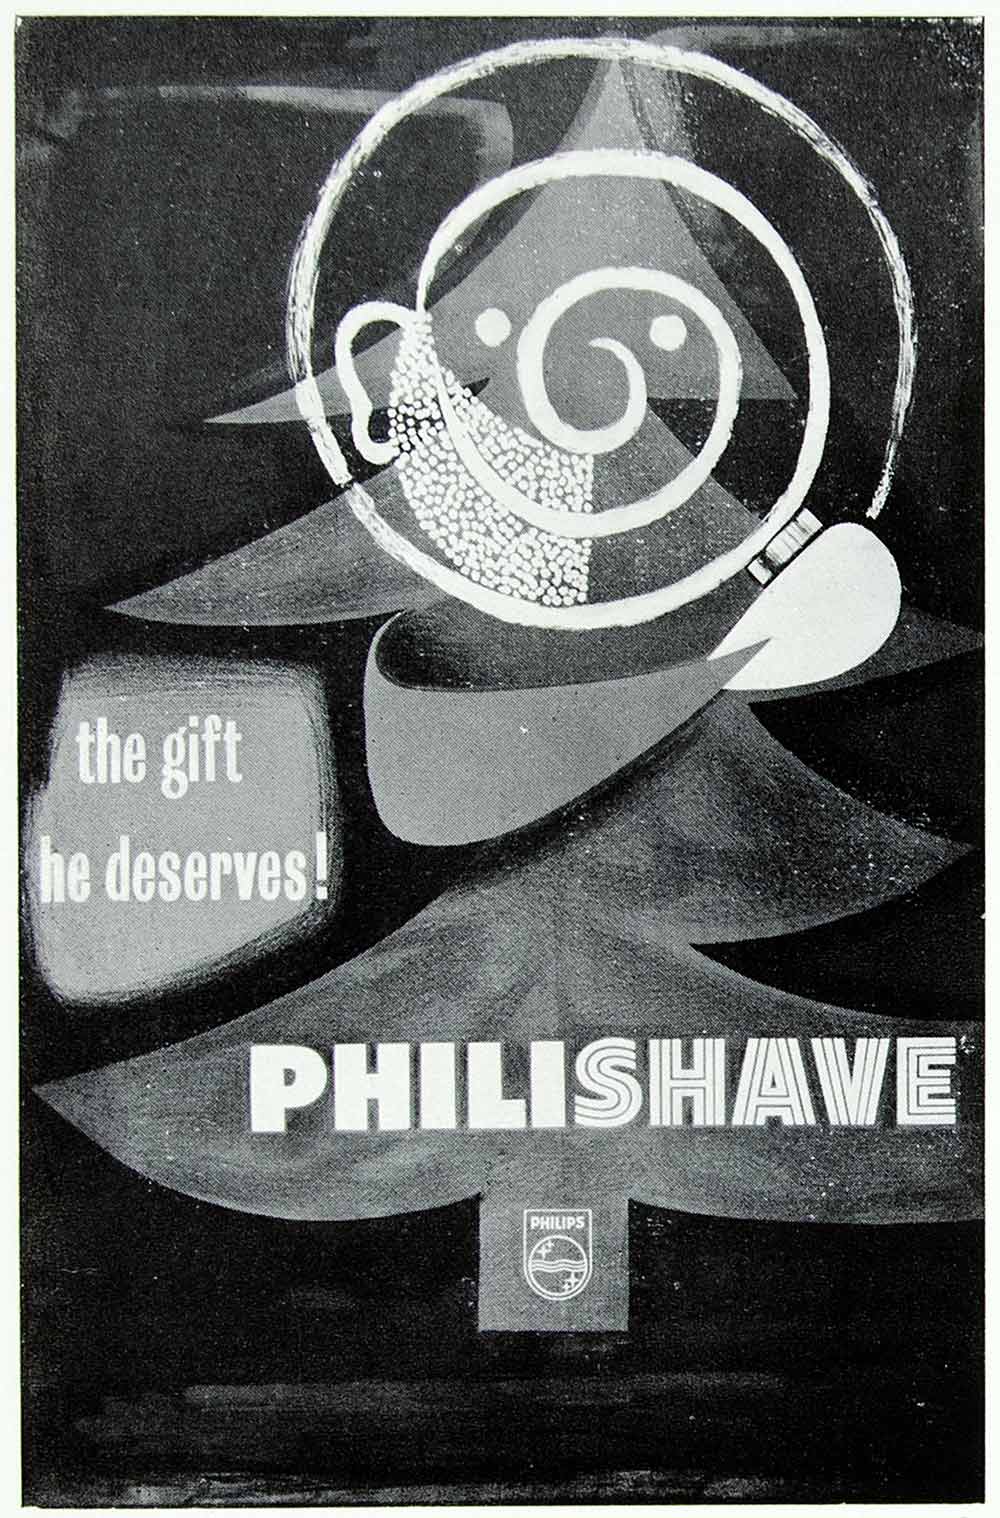 1958 Print F. H. K. Henrion Advertising Poster Philishave Electric Shaver VENA1